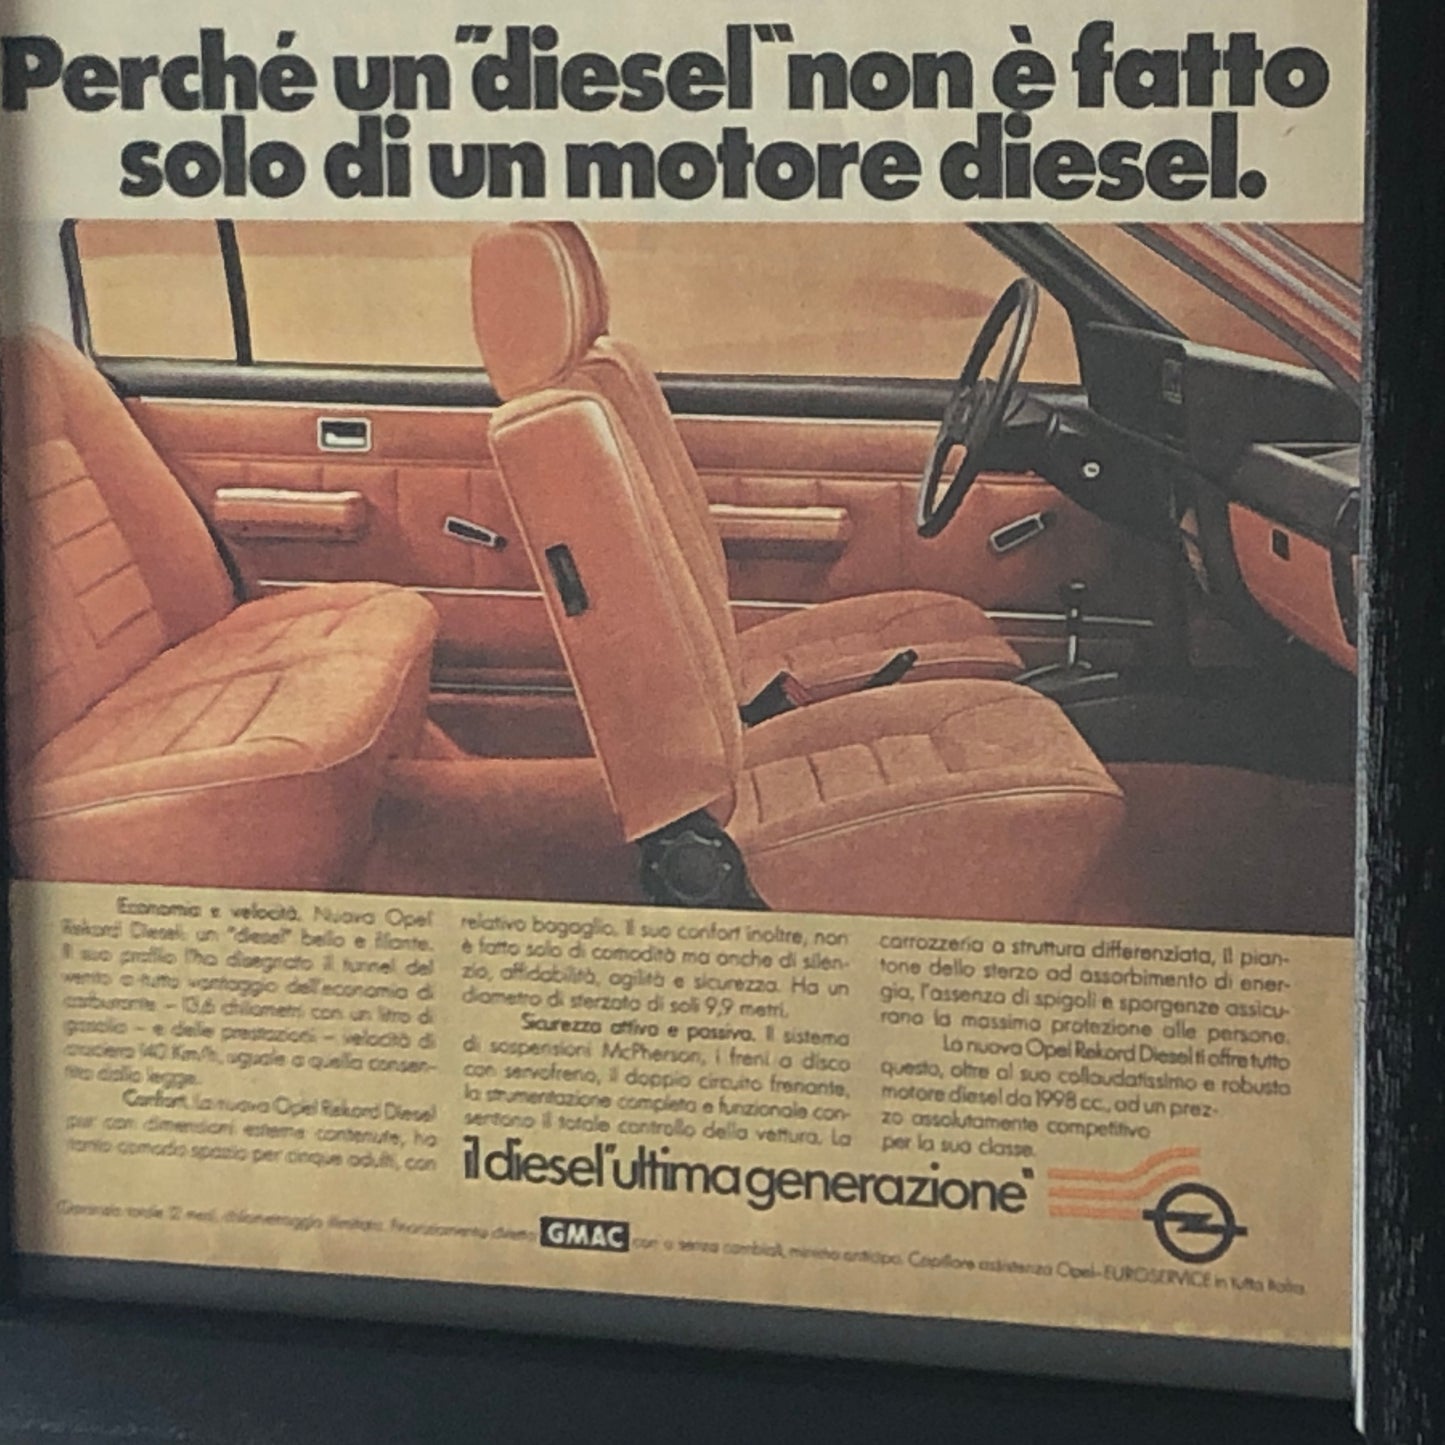 Opel, Advertising Year 1978 New Opel Rekord Diesel The Joy of Living